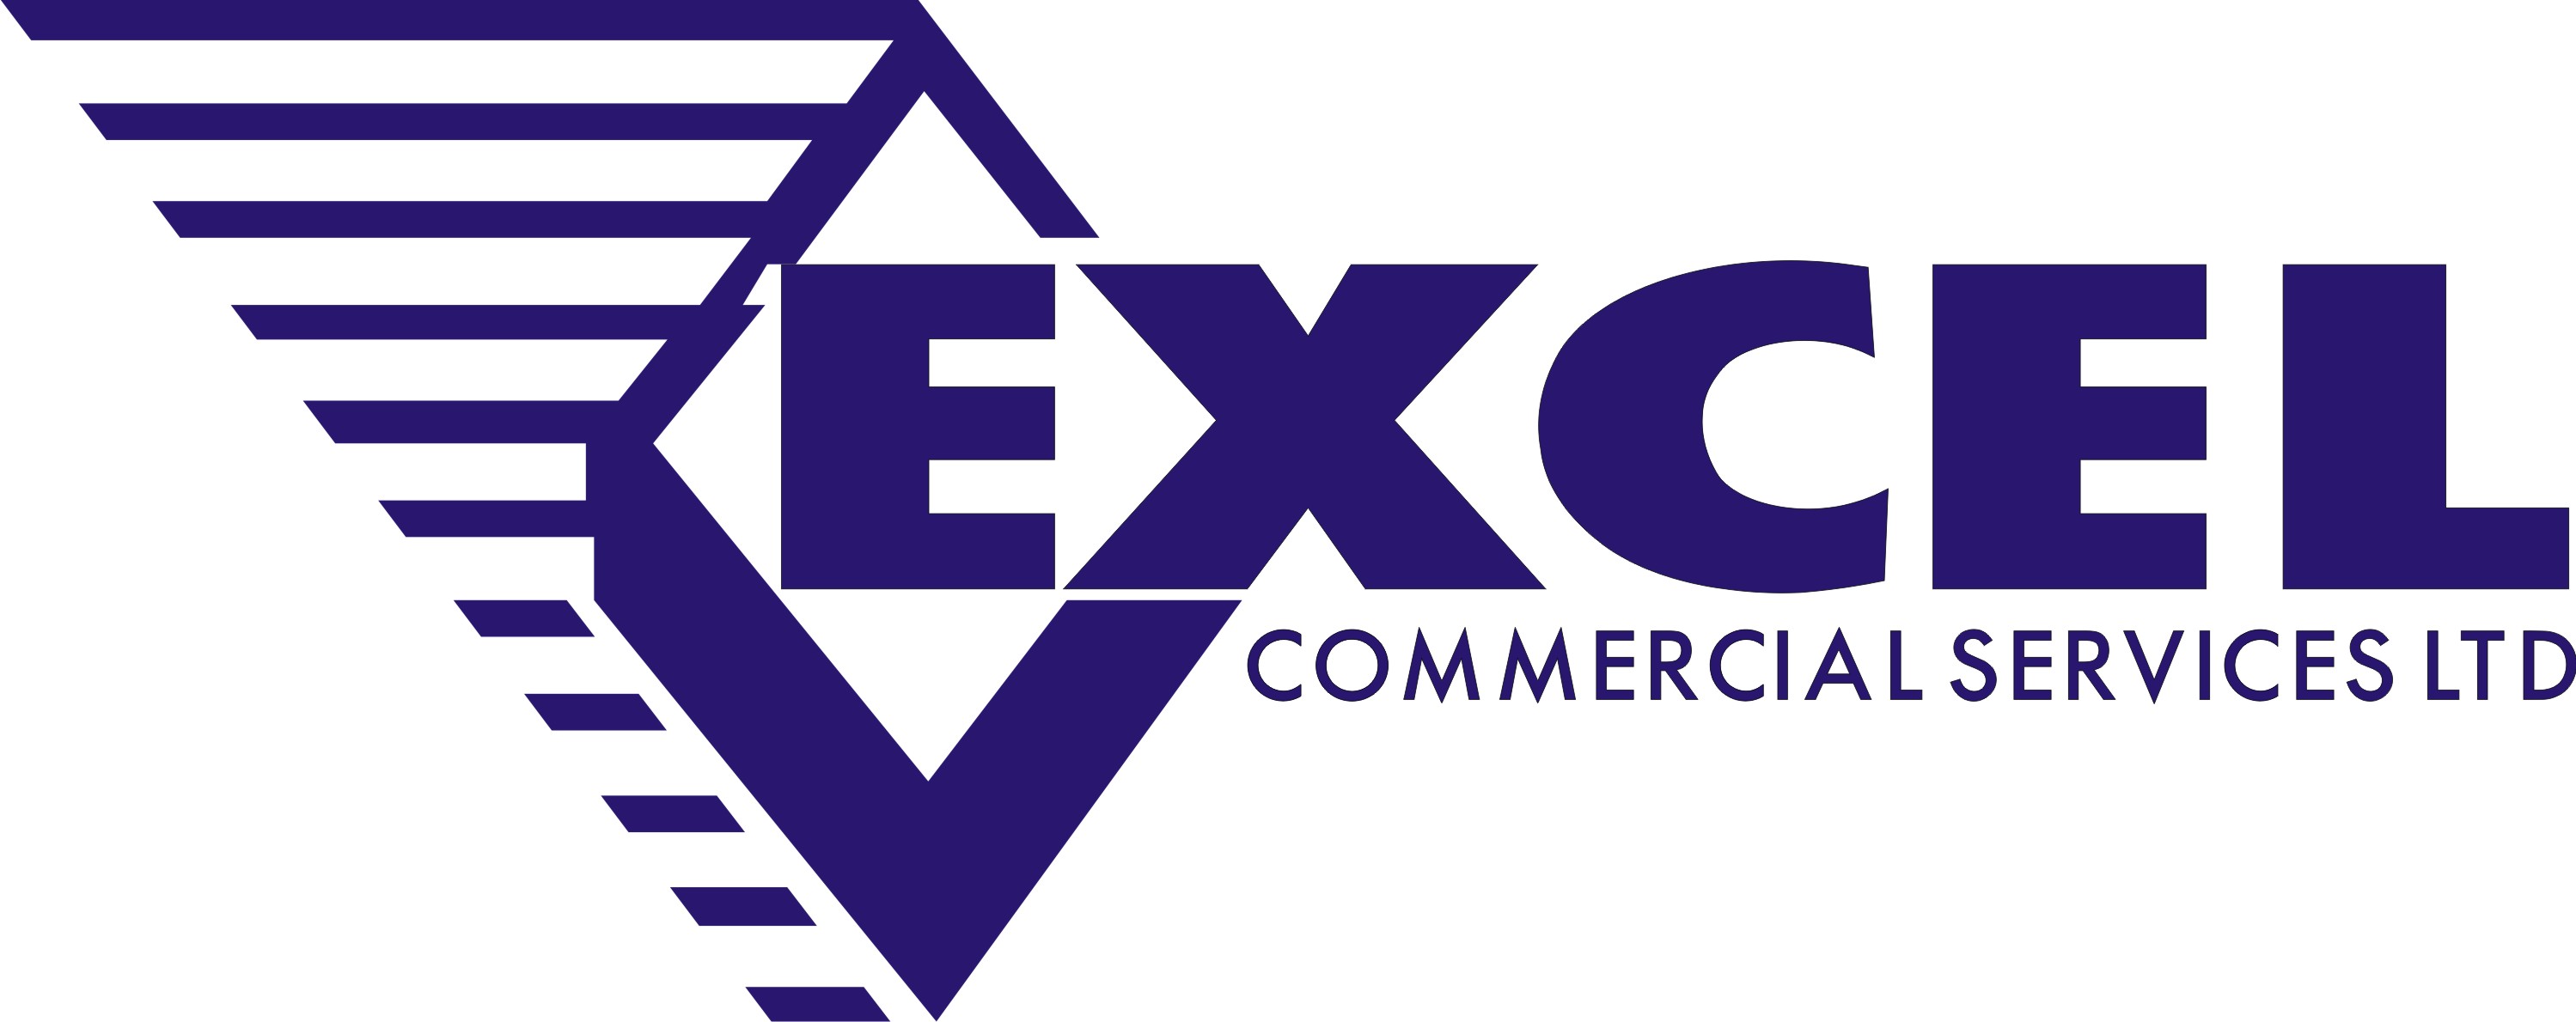 Excel Commercial Services Ltd